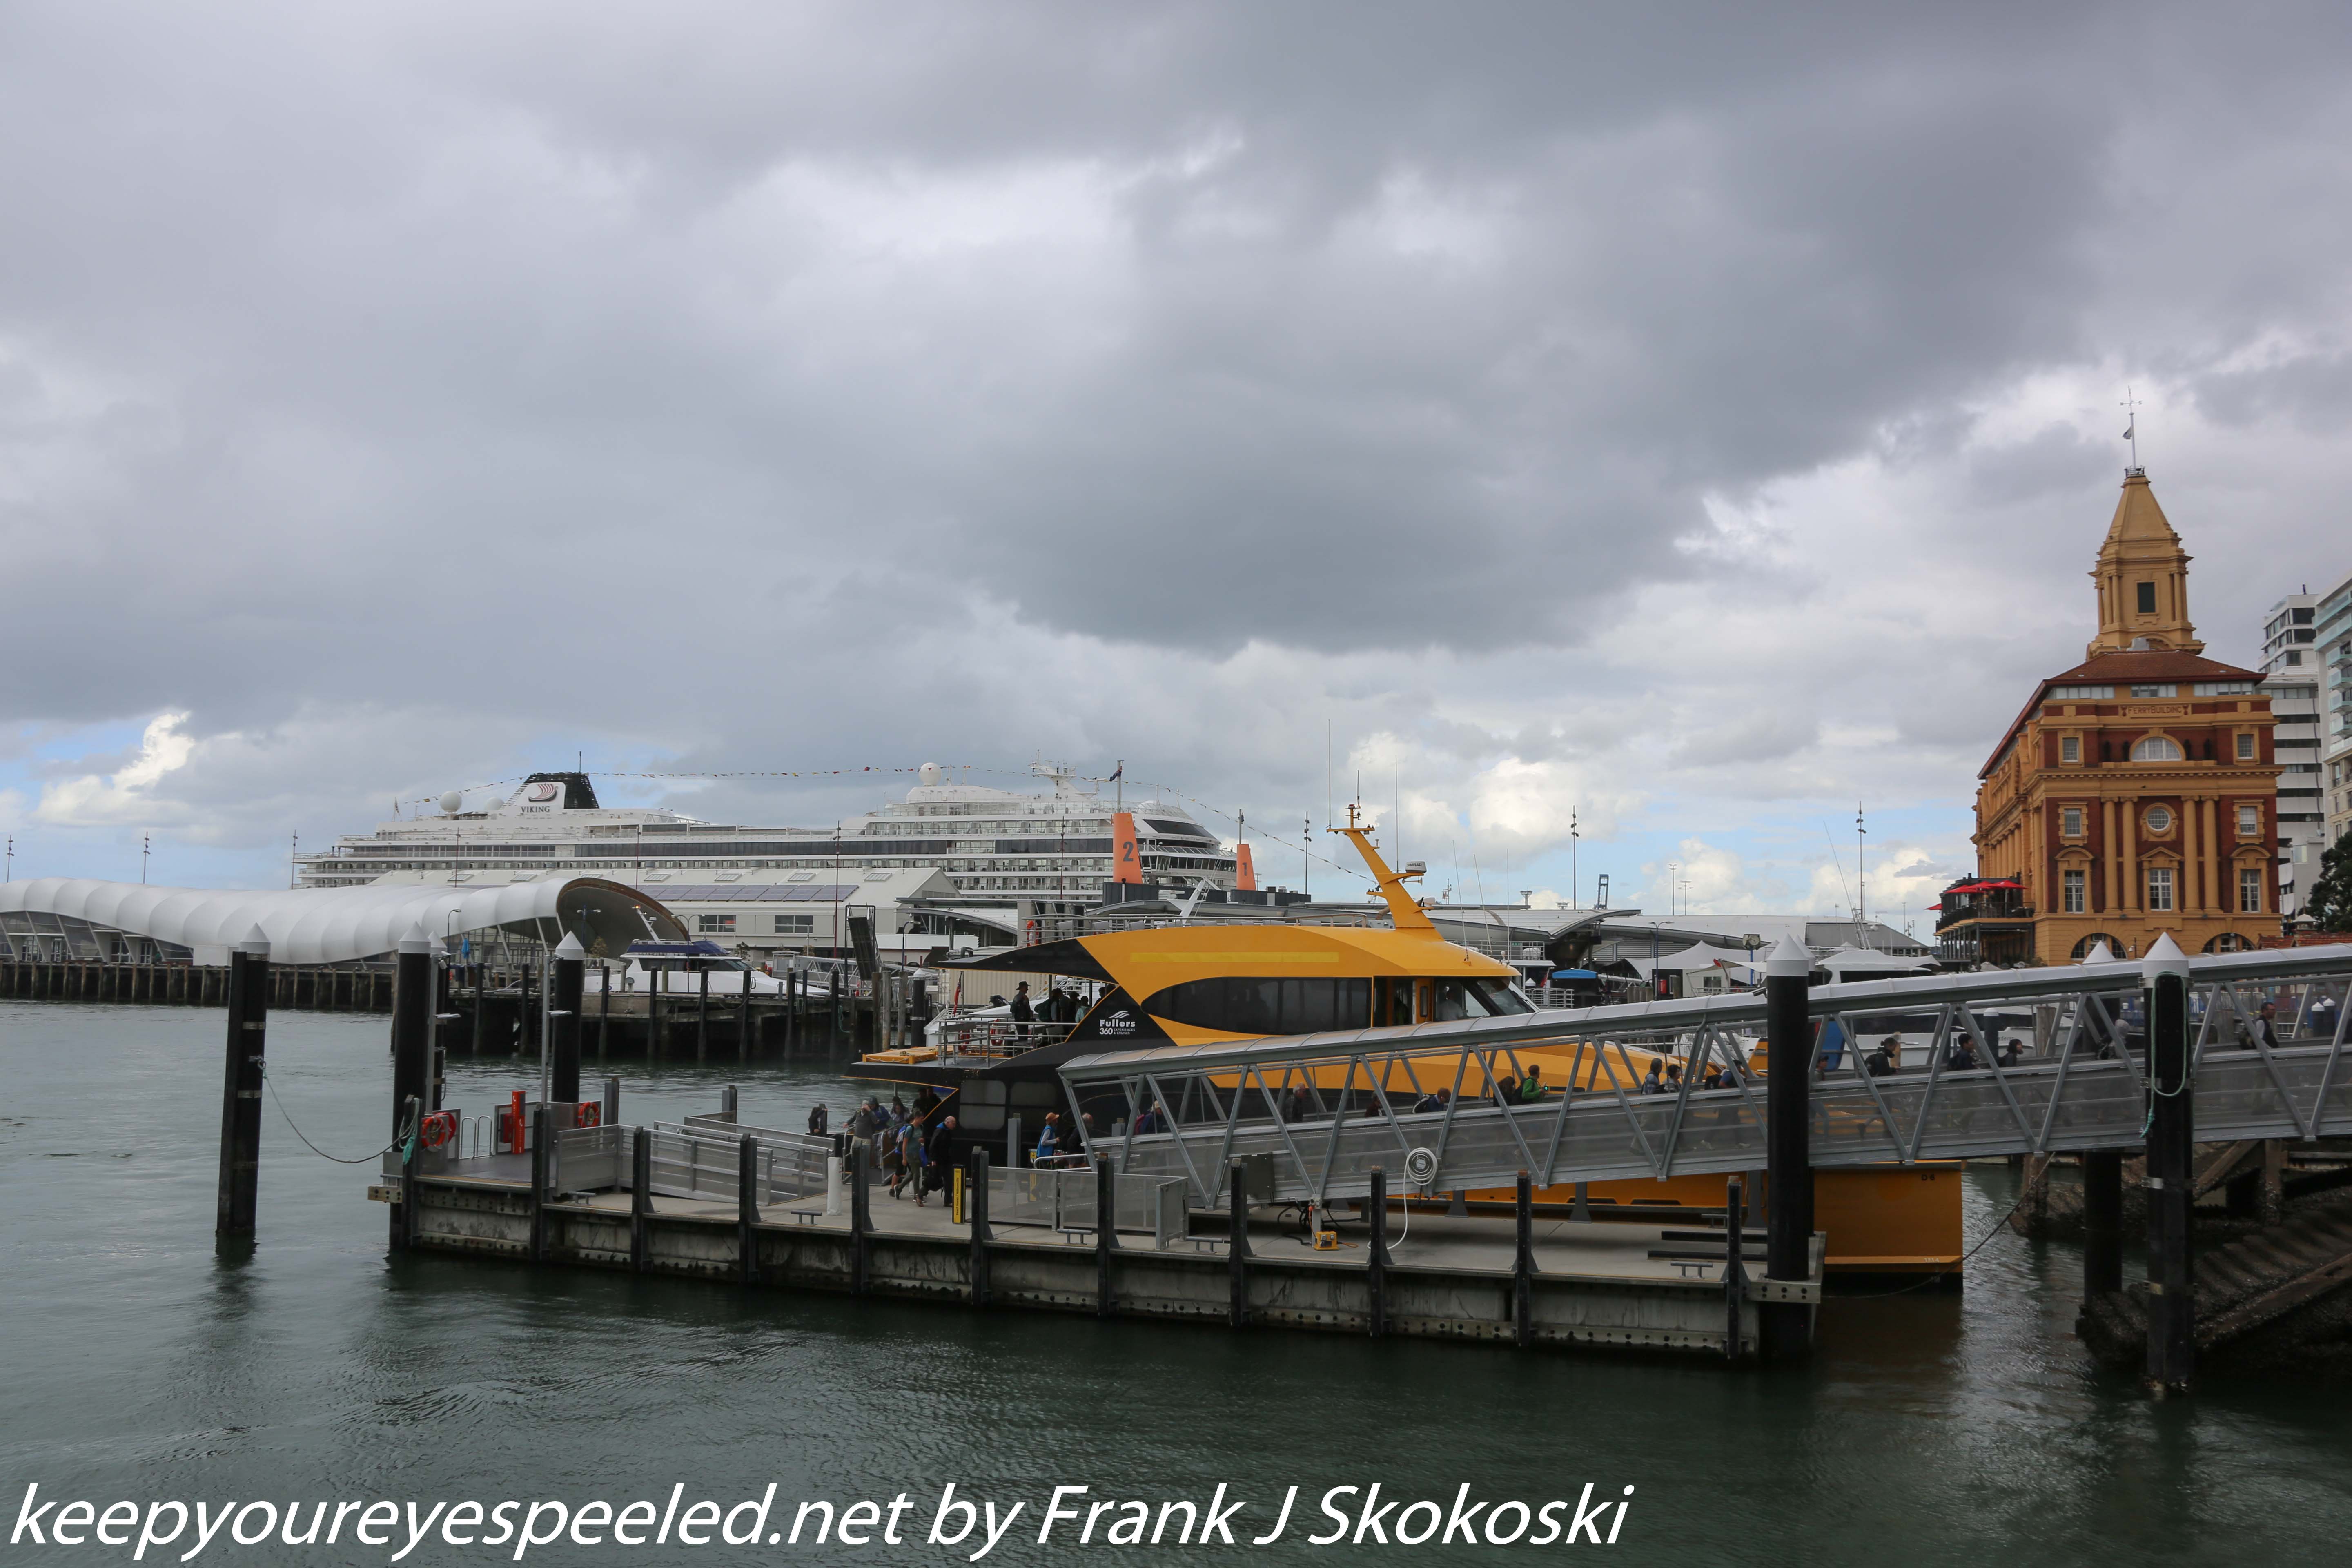 New-zealand-Day-Nineteen-Auckland-Tiritiri-Matangi-cruise-10-of-10